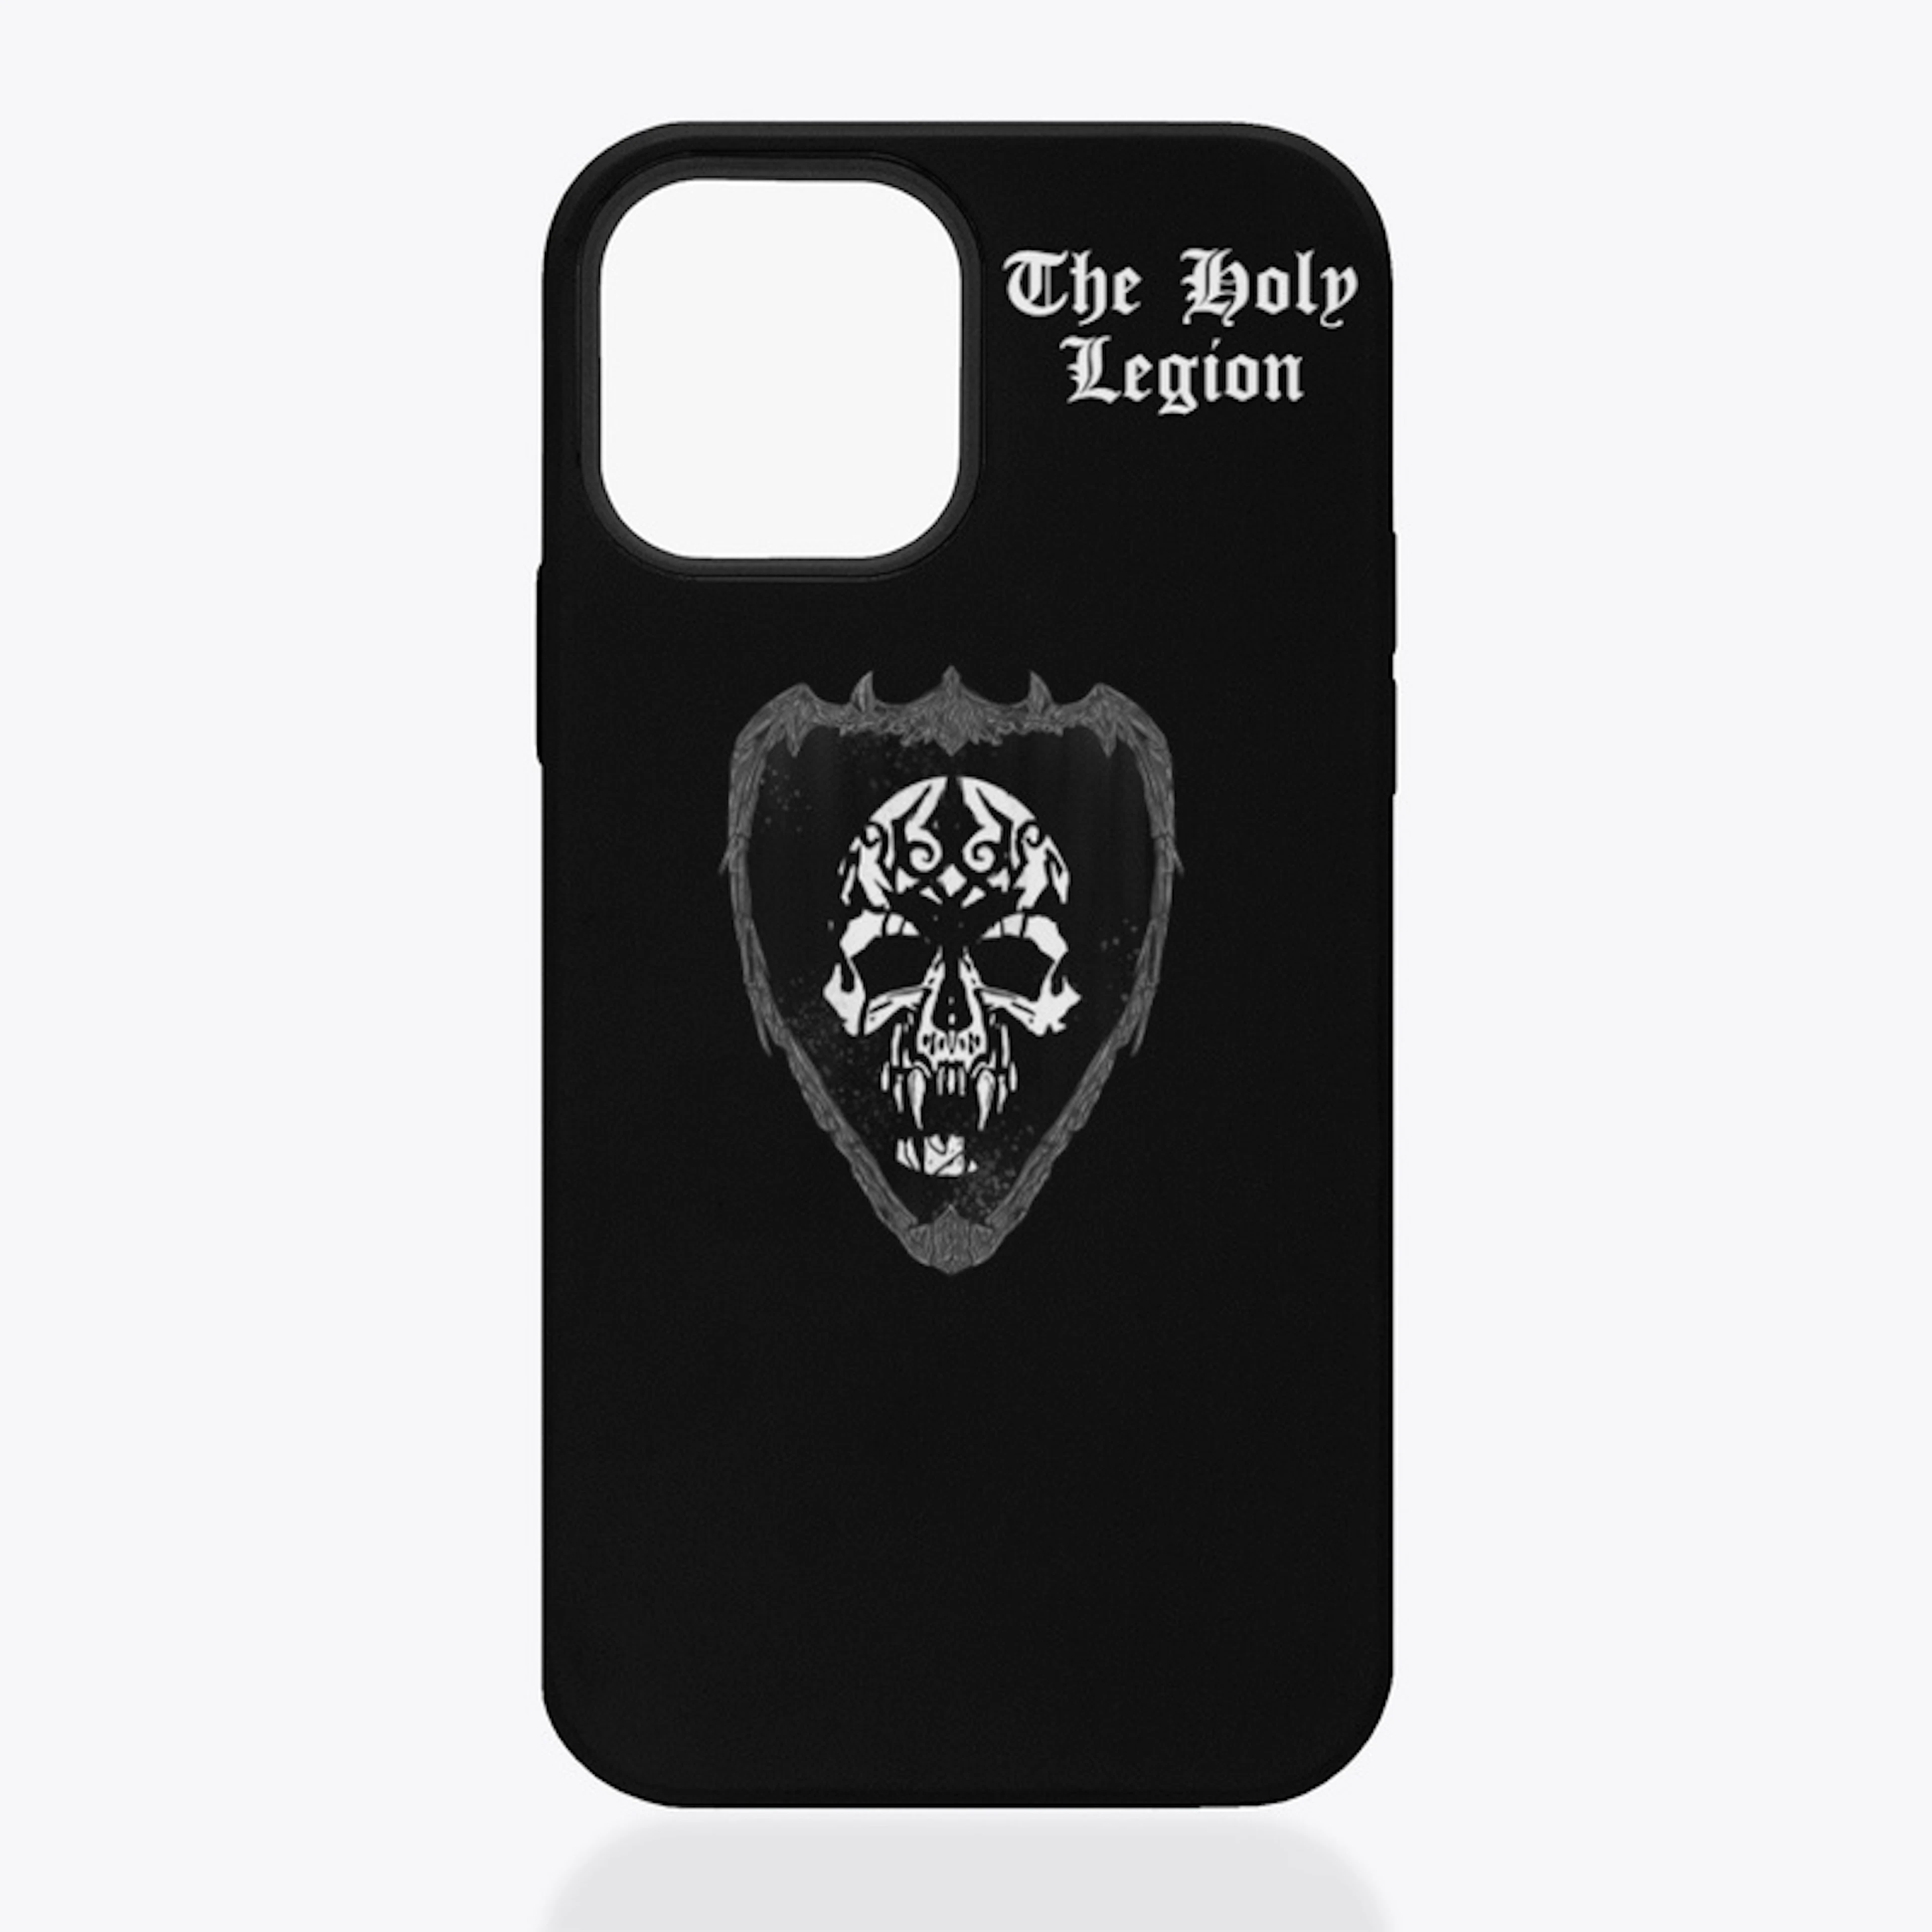 Holy Legion iPhone Case